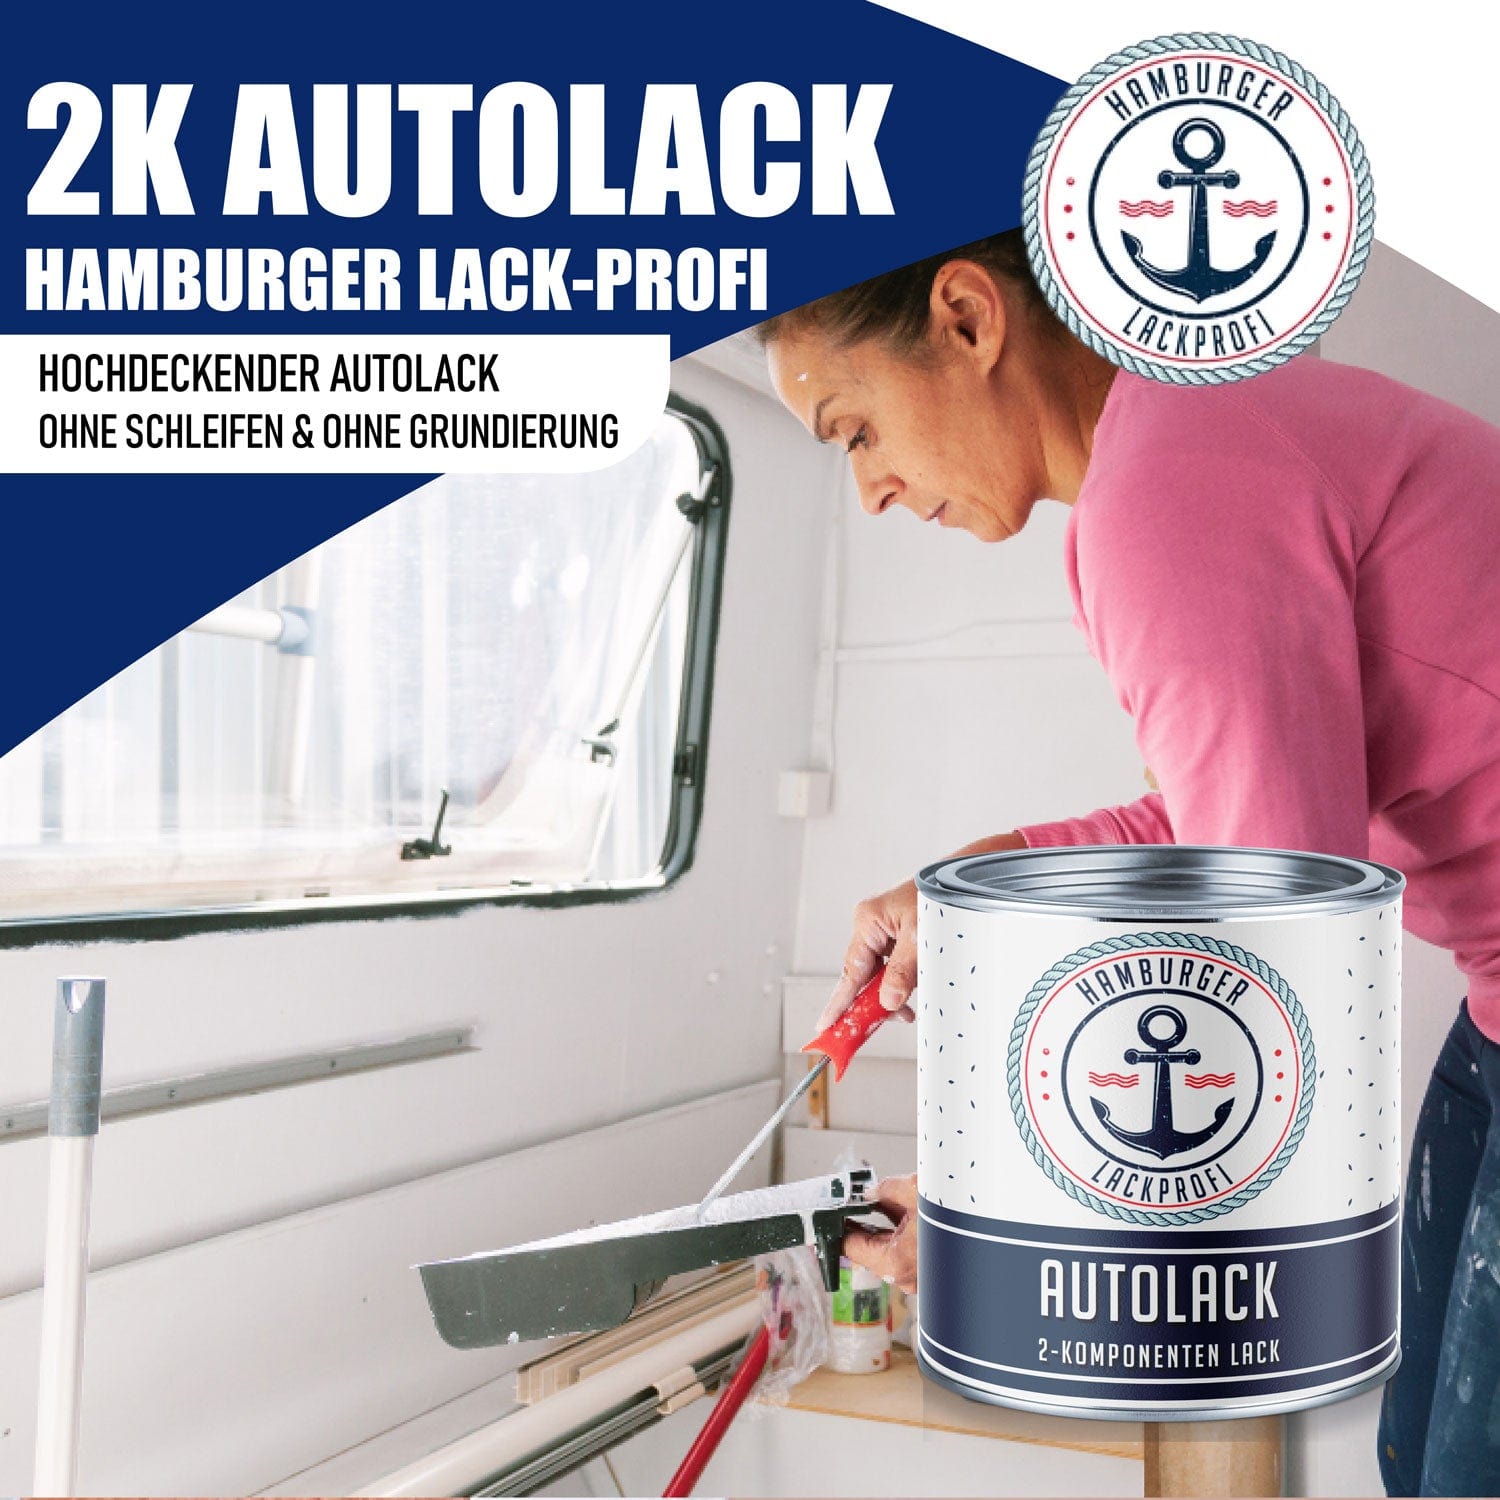 Hamburger Lack-Profi Lacke & Beschichtungen Hamburger Lack-Profi 2K Autolack in Weißgrün RAL 6019 mit Lackierset (X300) & Verdünnung (1 L) - 30% Sparangebot